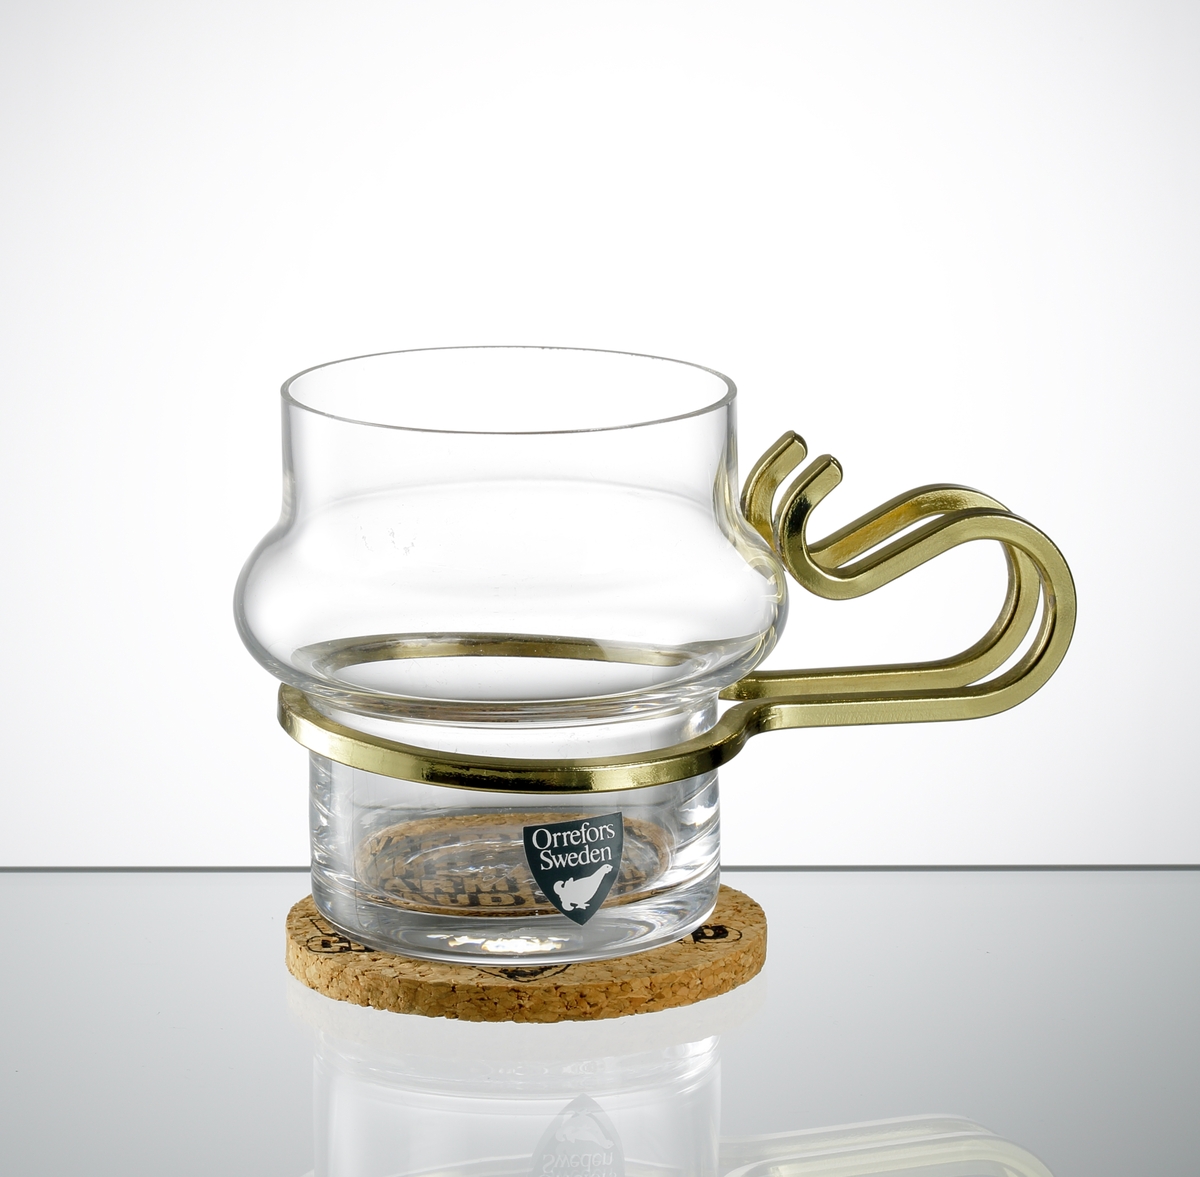 "Varm Kall", formgiven av Lindau & Lindekrantz. Glas för glögg, mocka, sherry. Cylindrisk form med vulst på kupans mittdel. Öra i mässing. Tillhörande underlägg i kork.